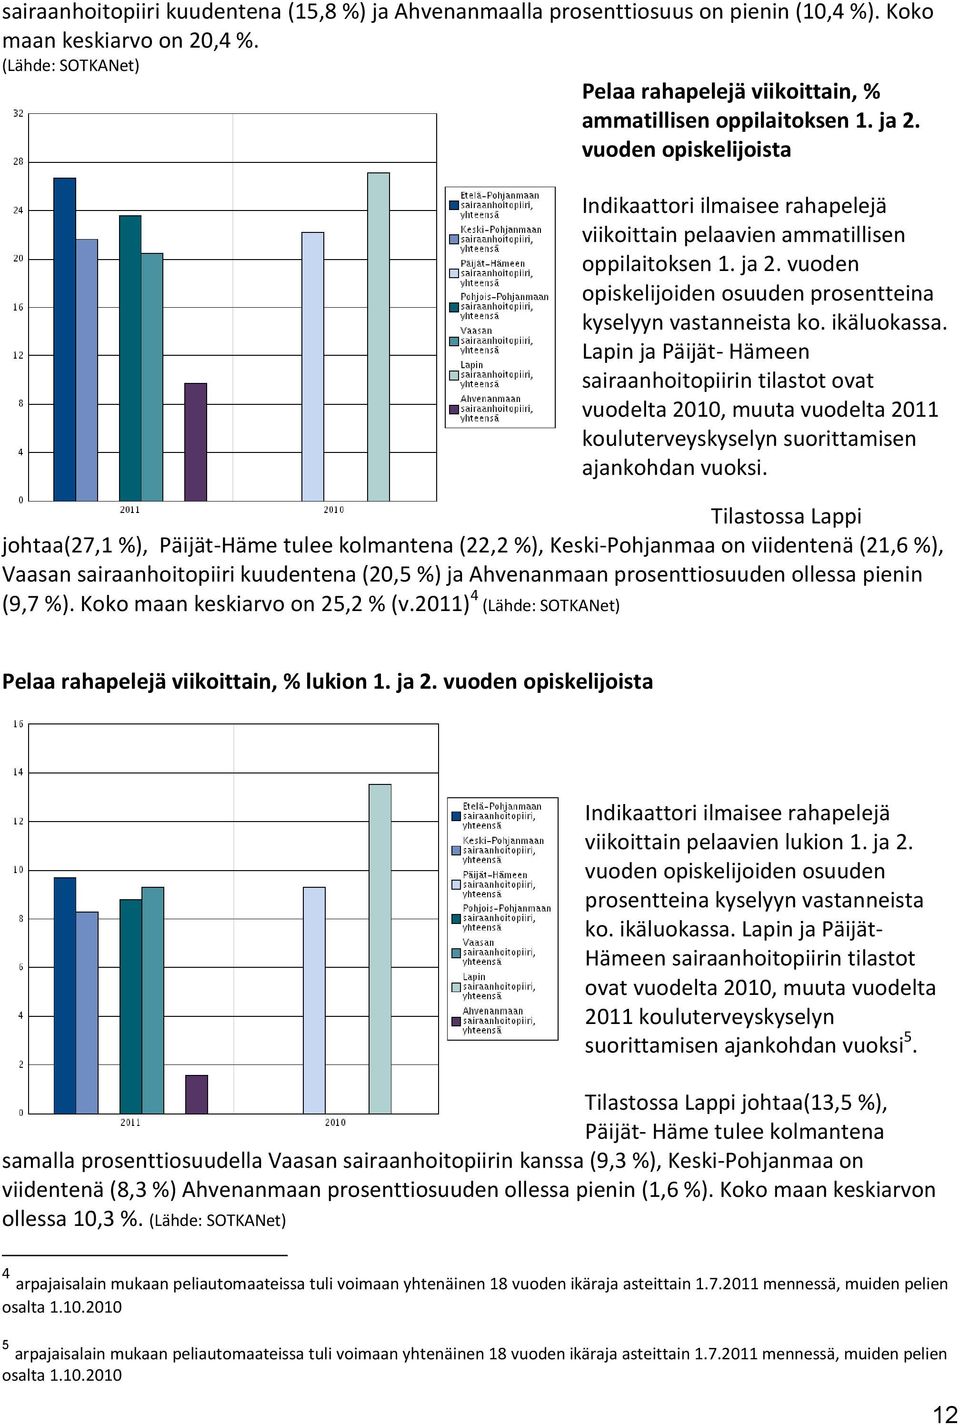 Lapin ja Päijät- Hämeen sairaanhoitopiirin tilastot ovat vuodelta 2010, muuta vuodelta 2011 kouluterveyskyselyn suorittamisen ajankohdan vuoksi.